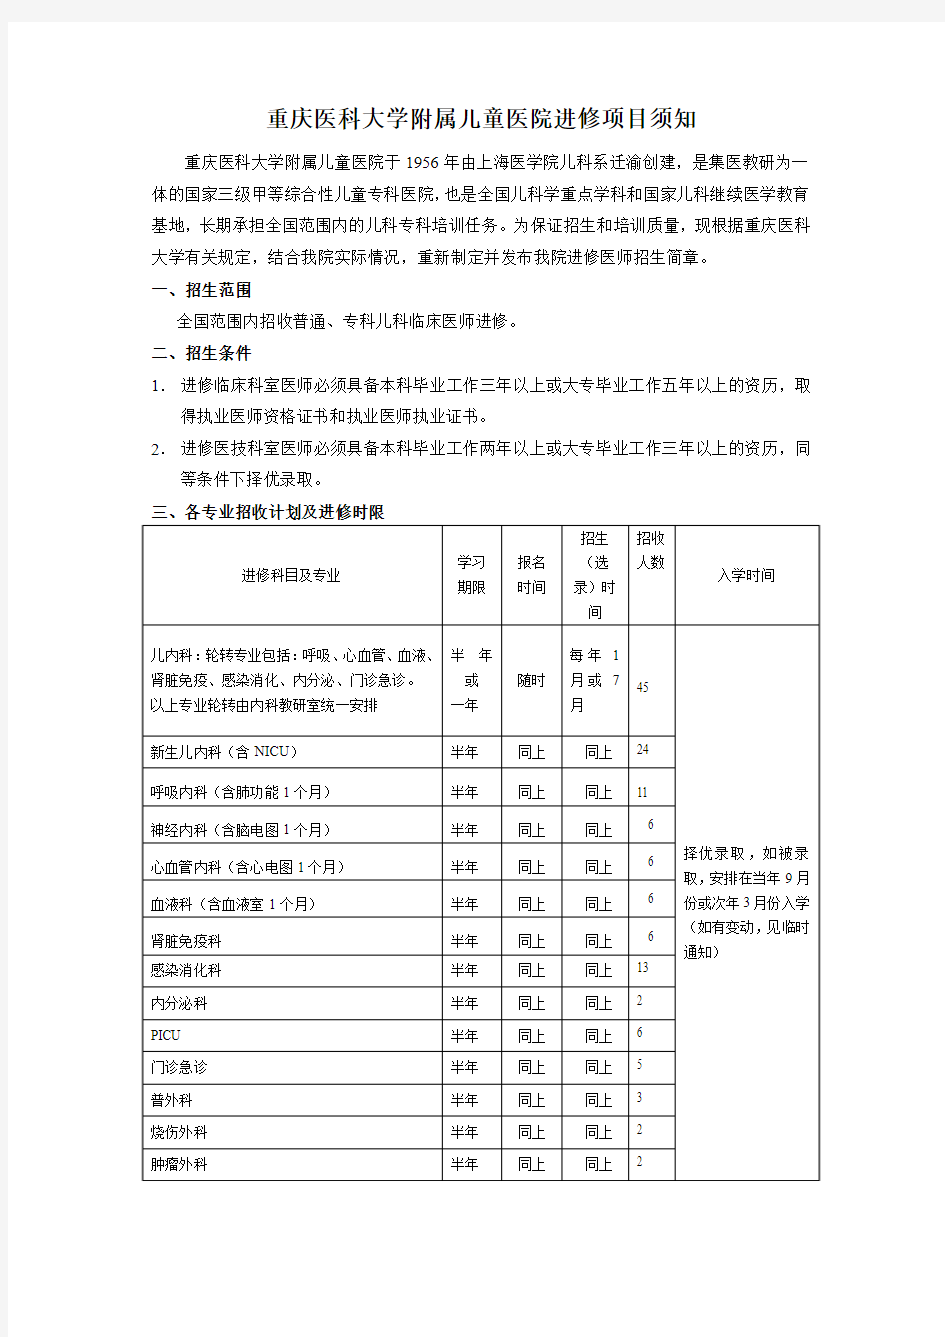 重庆医科大学附属儿童医院进修须知(2013年修订版)